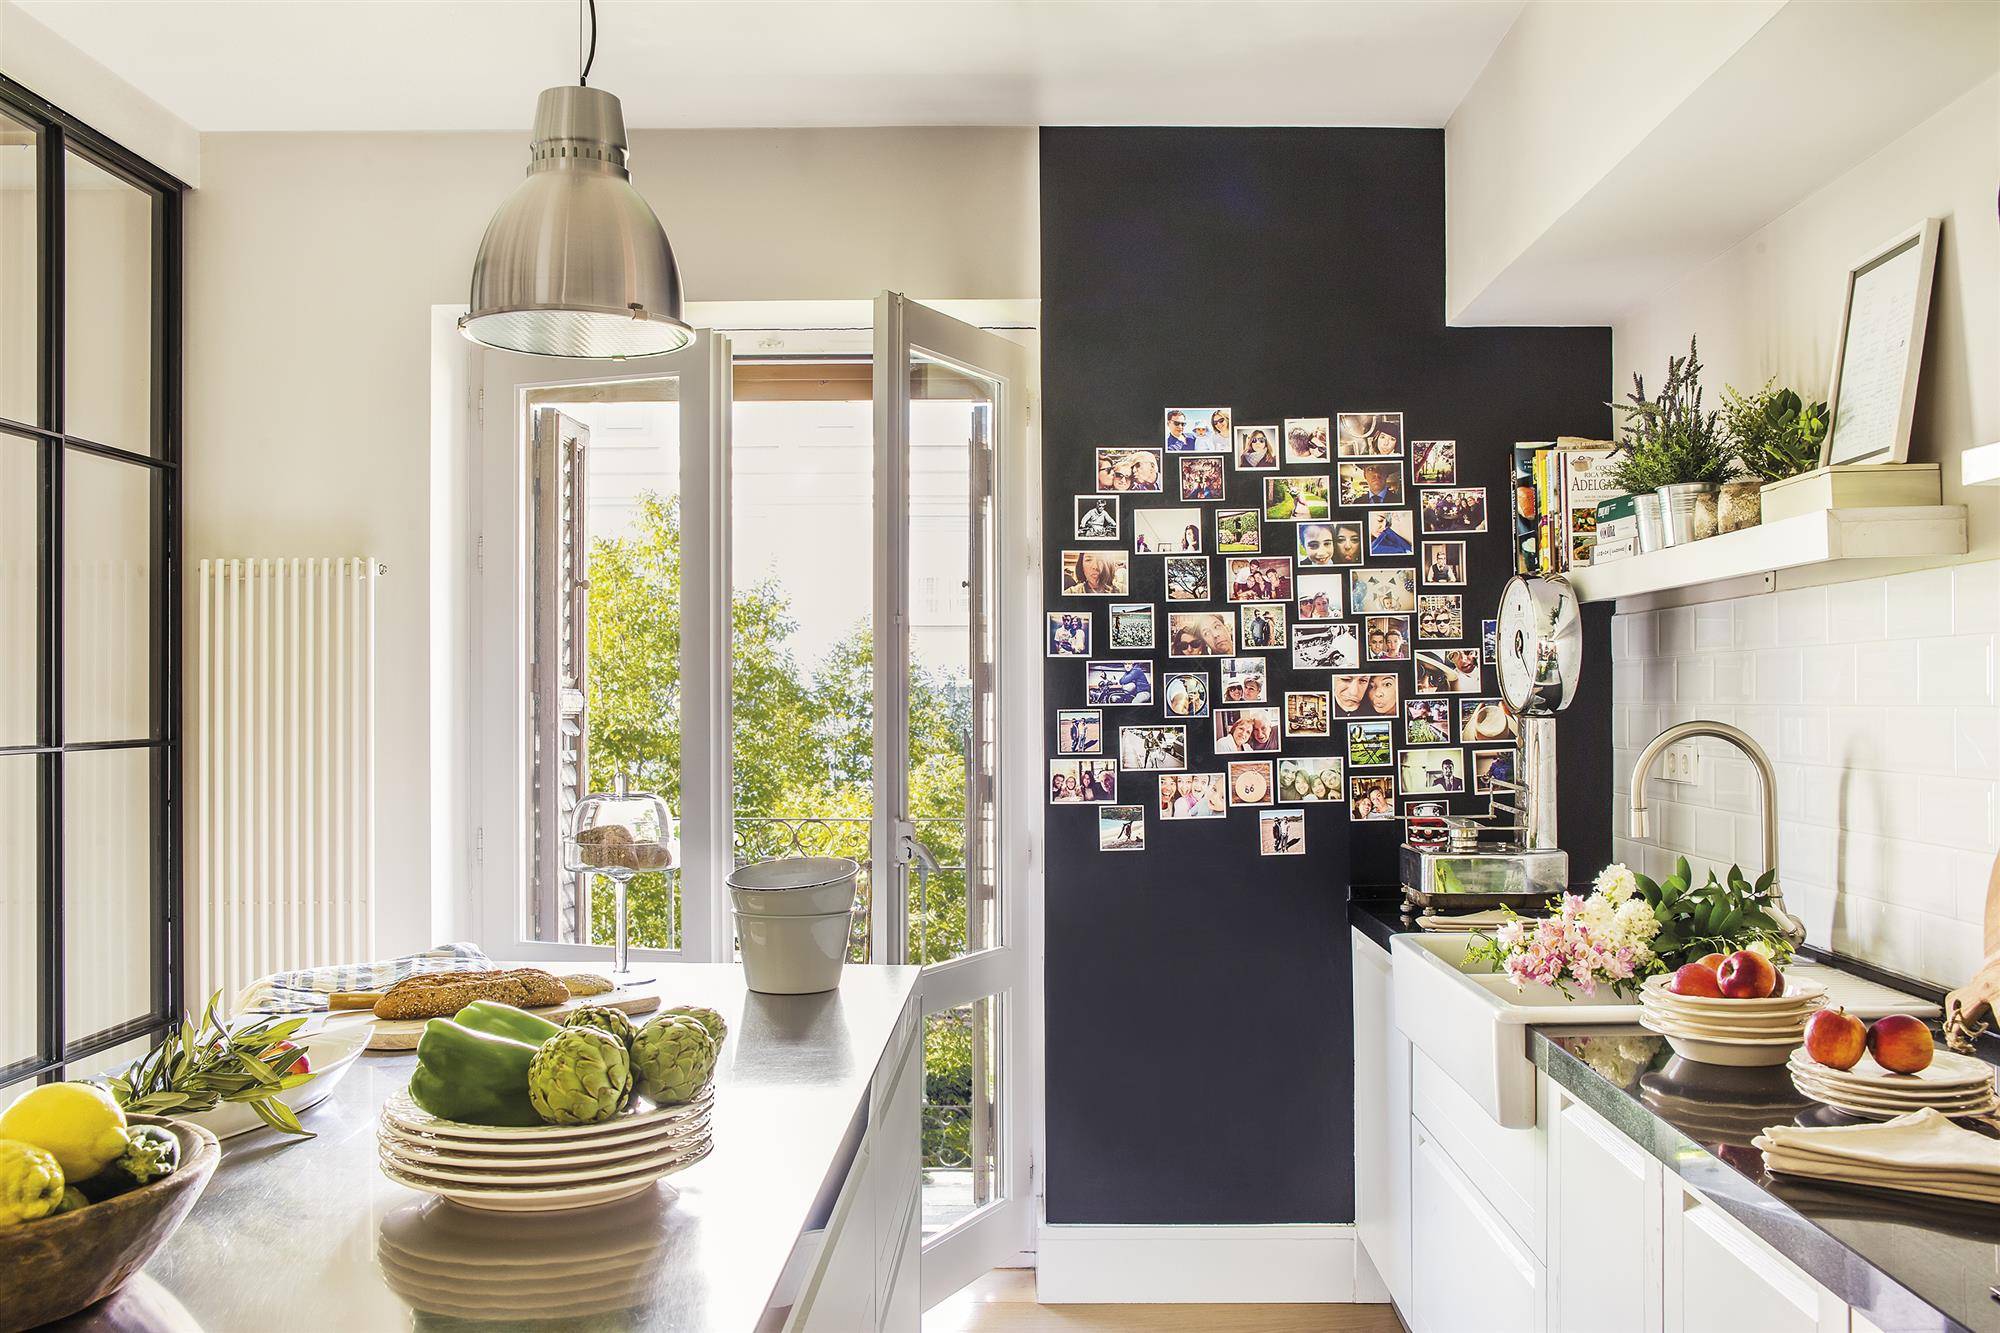 Cocina en blanco en finca regia con pared en negro decorada con fotos